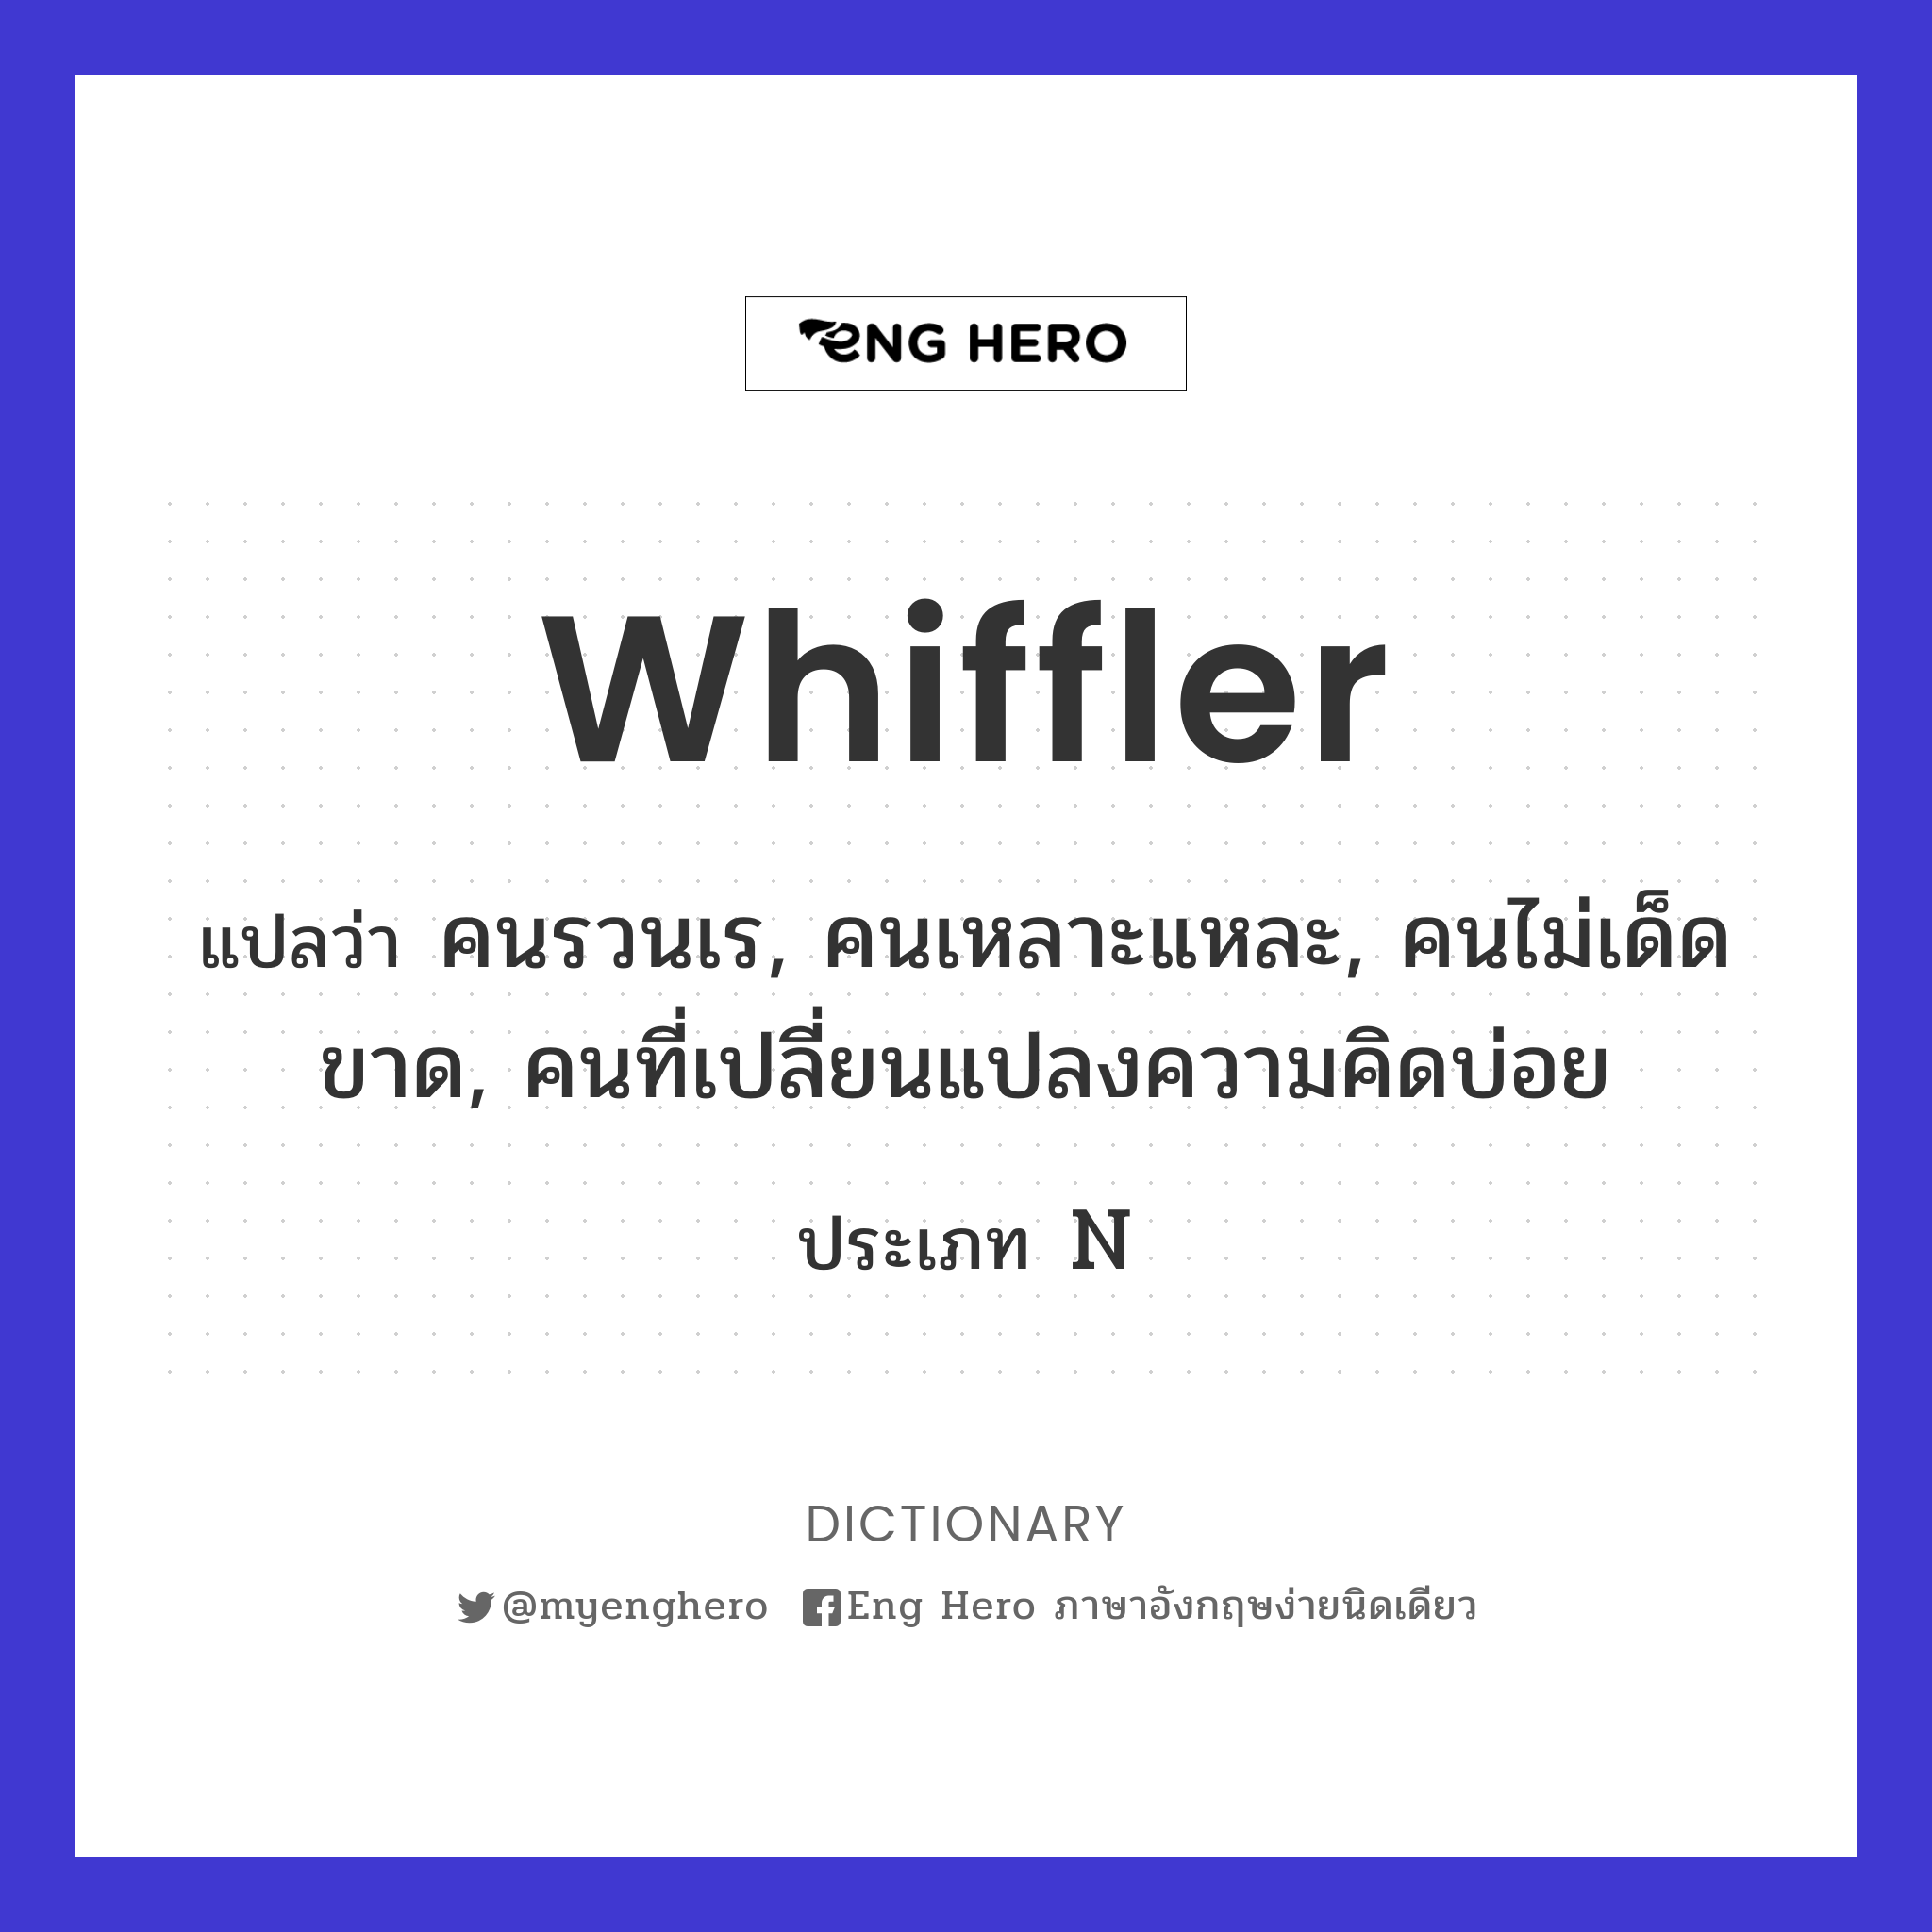 whiffler